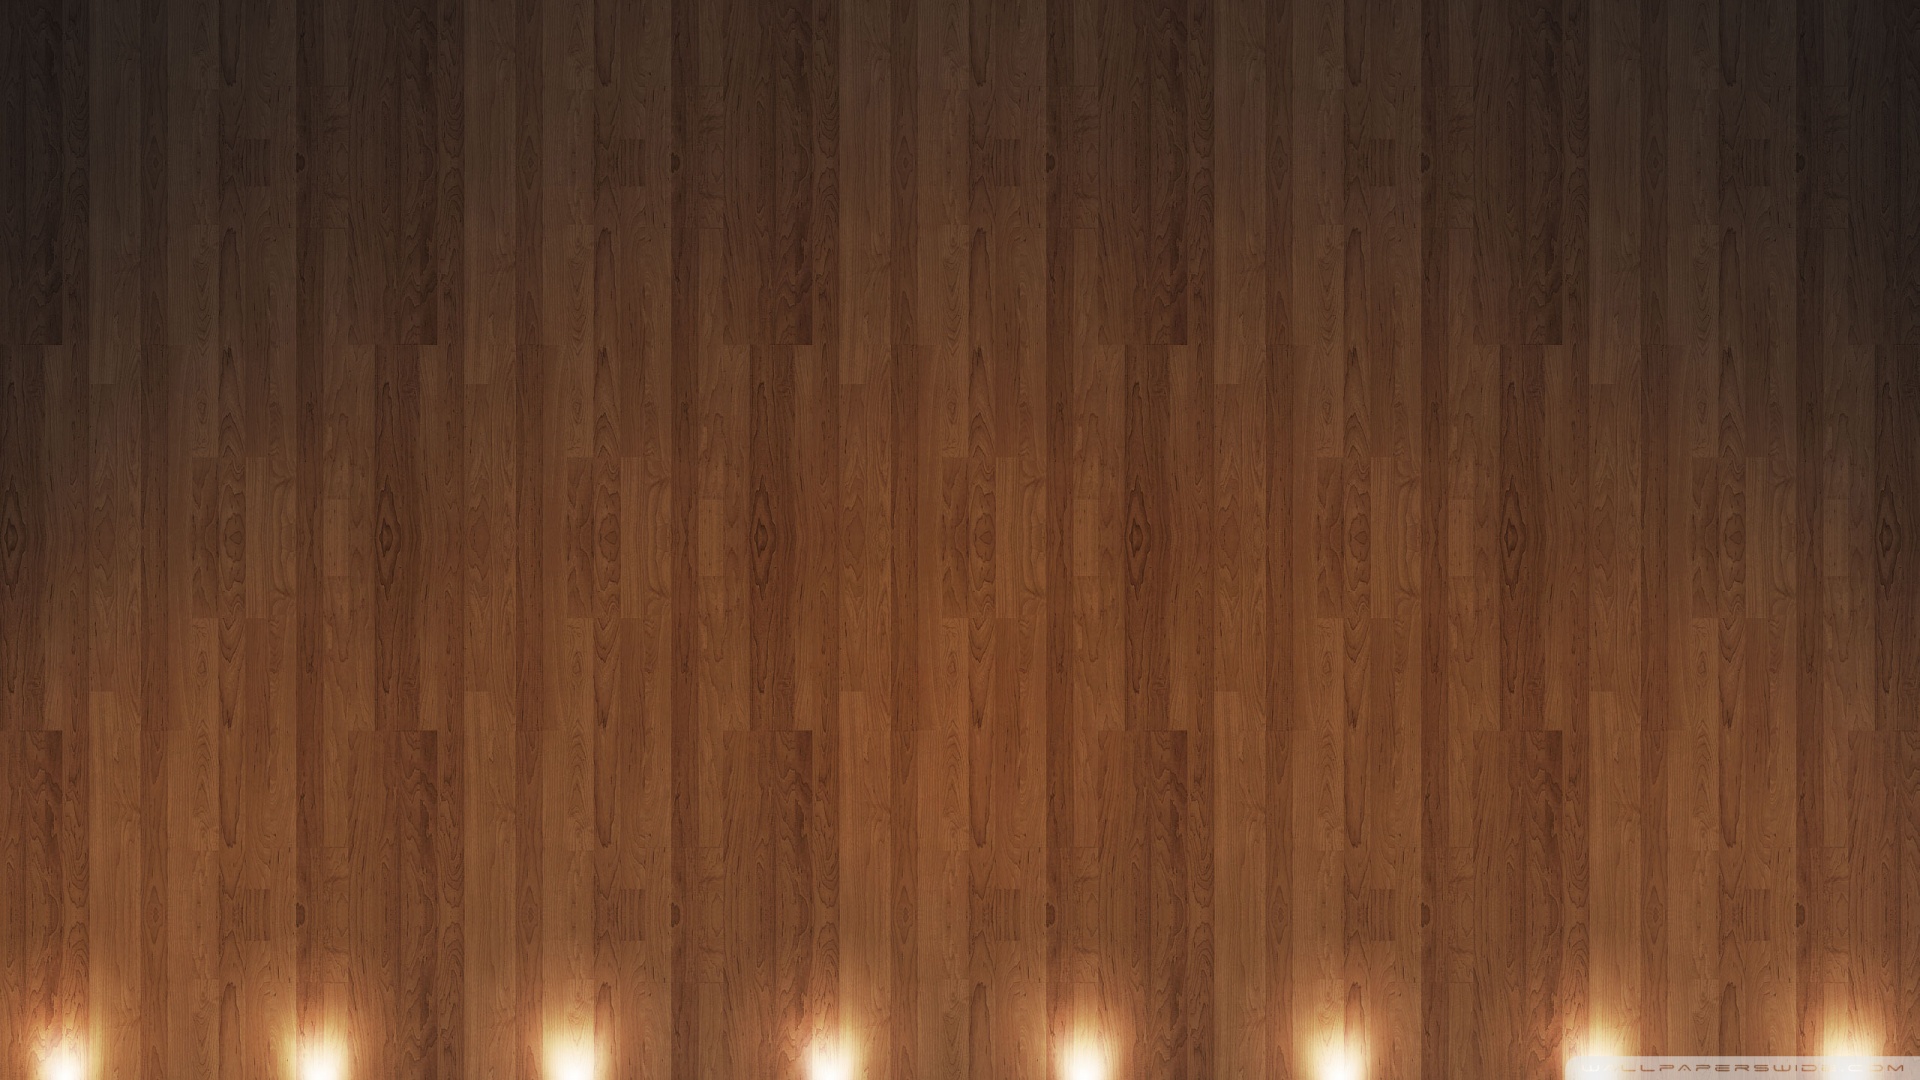 Hình nền gỗ đẹp: Hình nền gỗ đẹp chắc chắn sẽ khiến bạn mê mẩn ngay từ cái nhìn đầu tiên. Với những màu sắc tinh tế và chi tiết tinh xảo, hình nền gỗ đẹp sẽ làm cho không gian của bạn trở nên đẹp mắt và ấm cúng hơn.